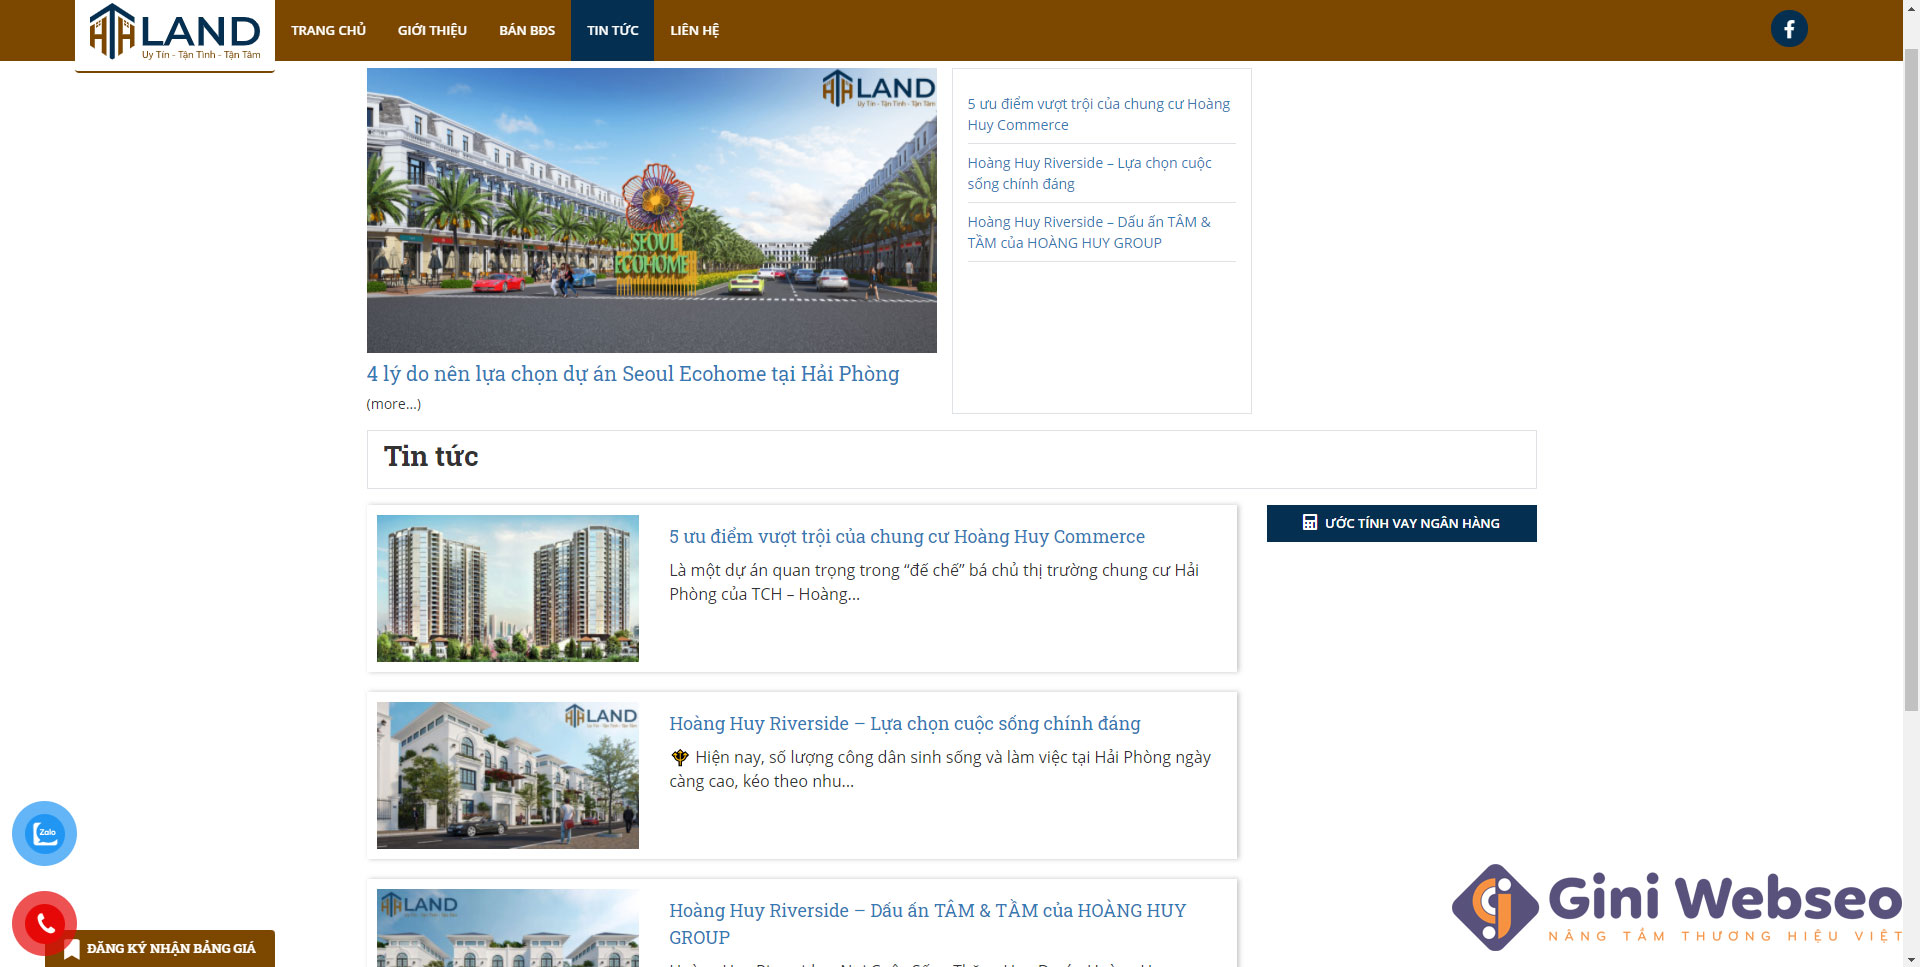 Thiết kế website bất động sản HTH Land